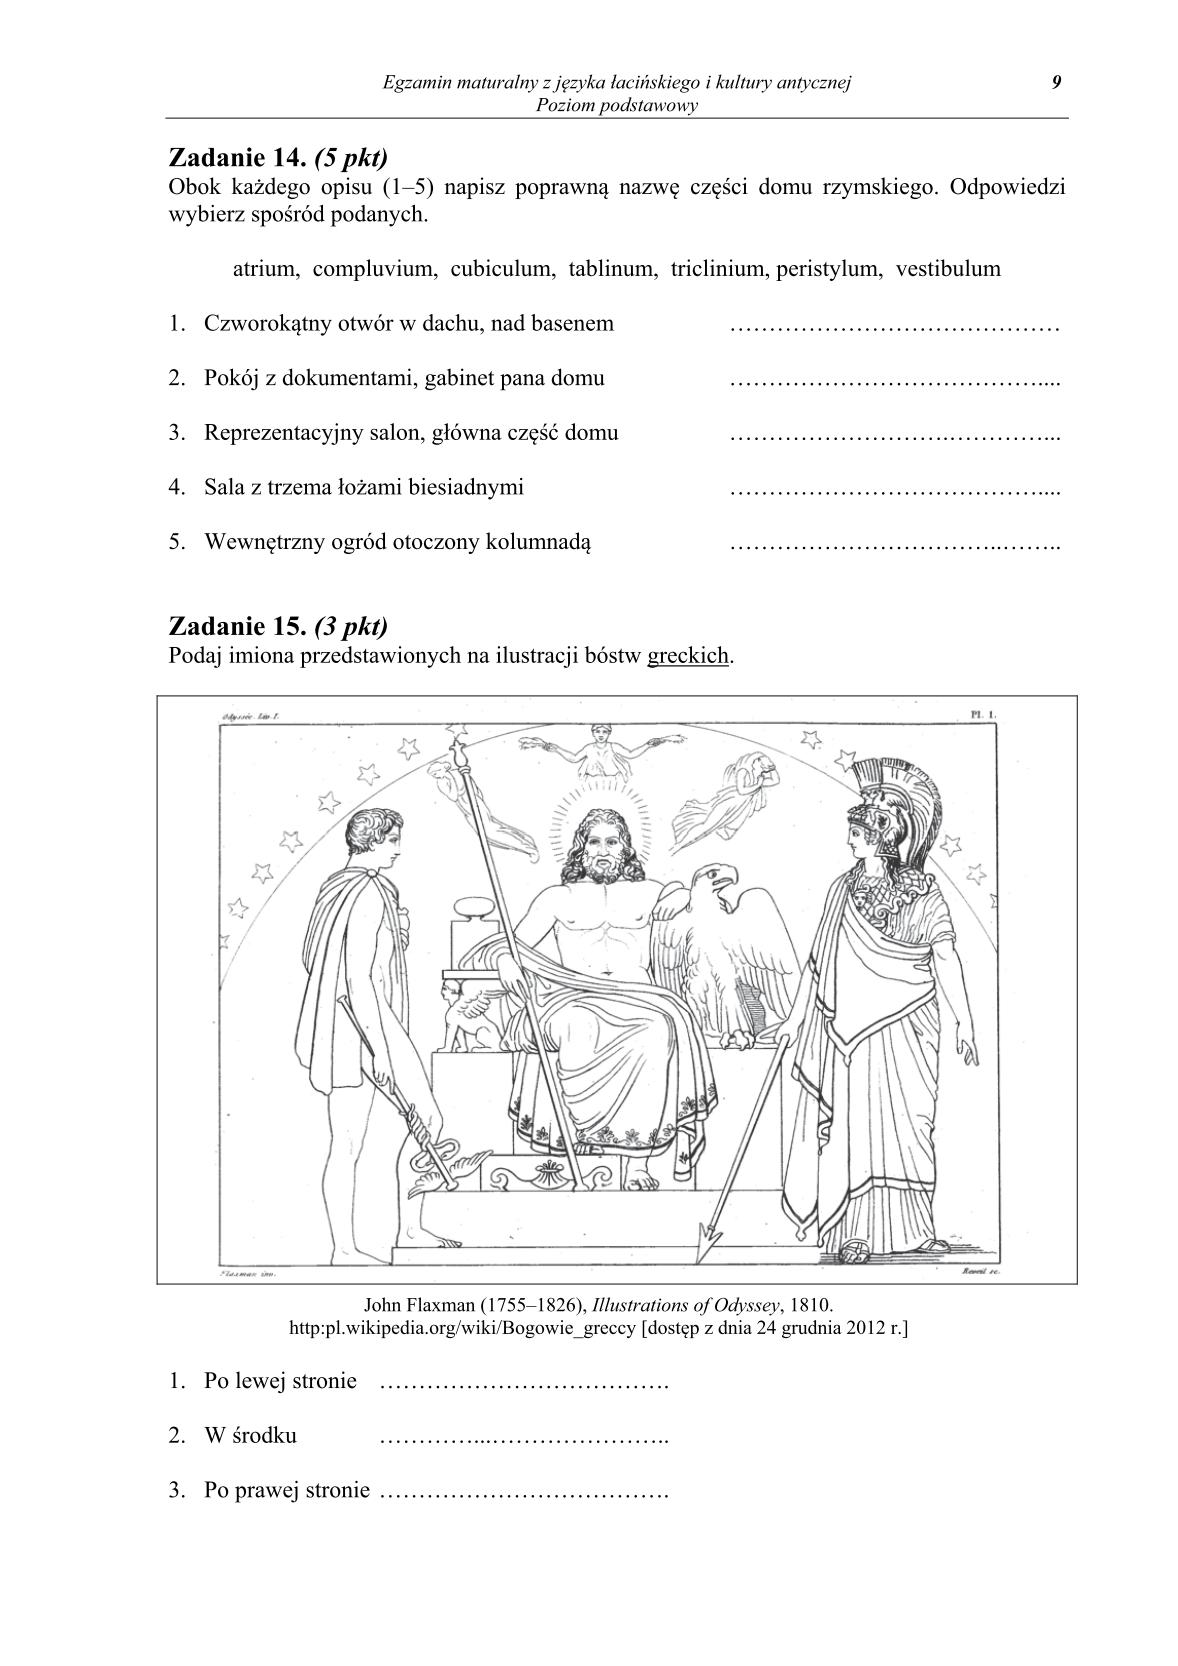 pytania-jezyk-lacinski-i-kultura-antyczna-poziom-podstawowy-matura-2014-str.9